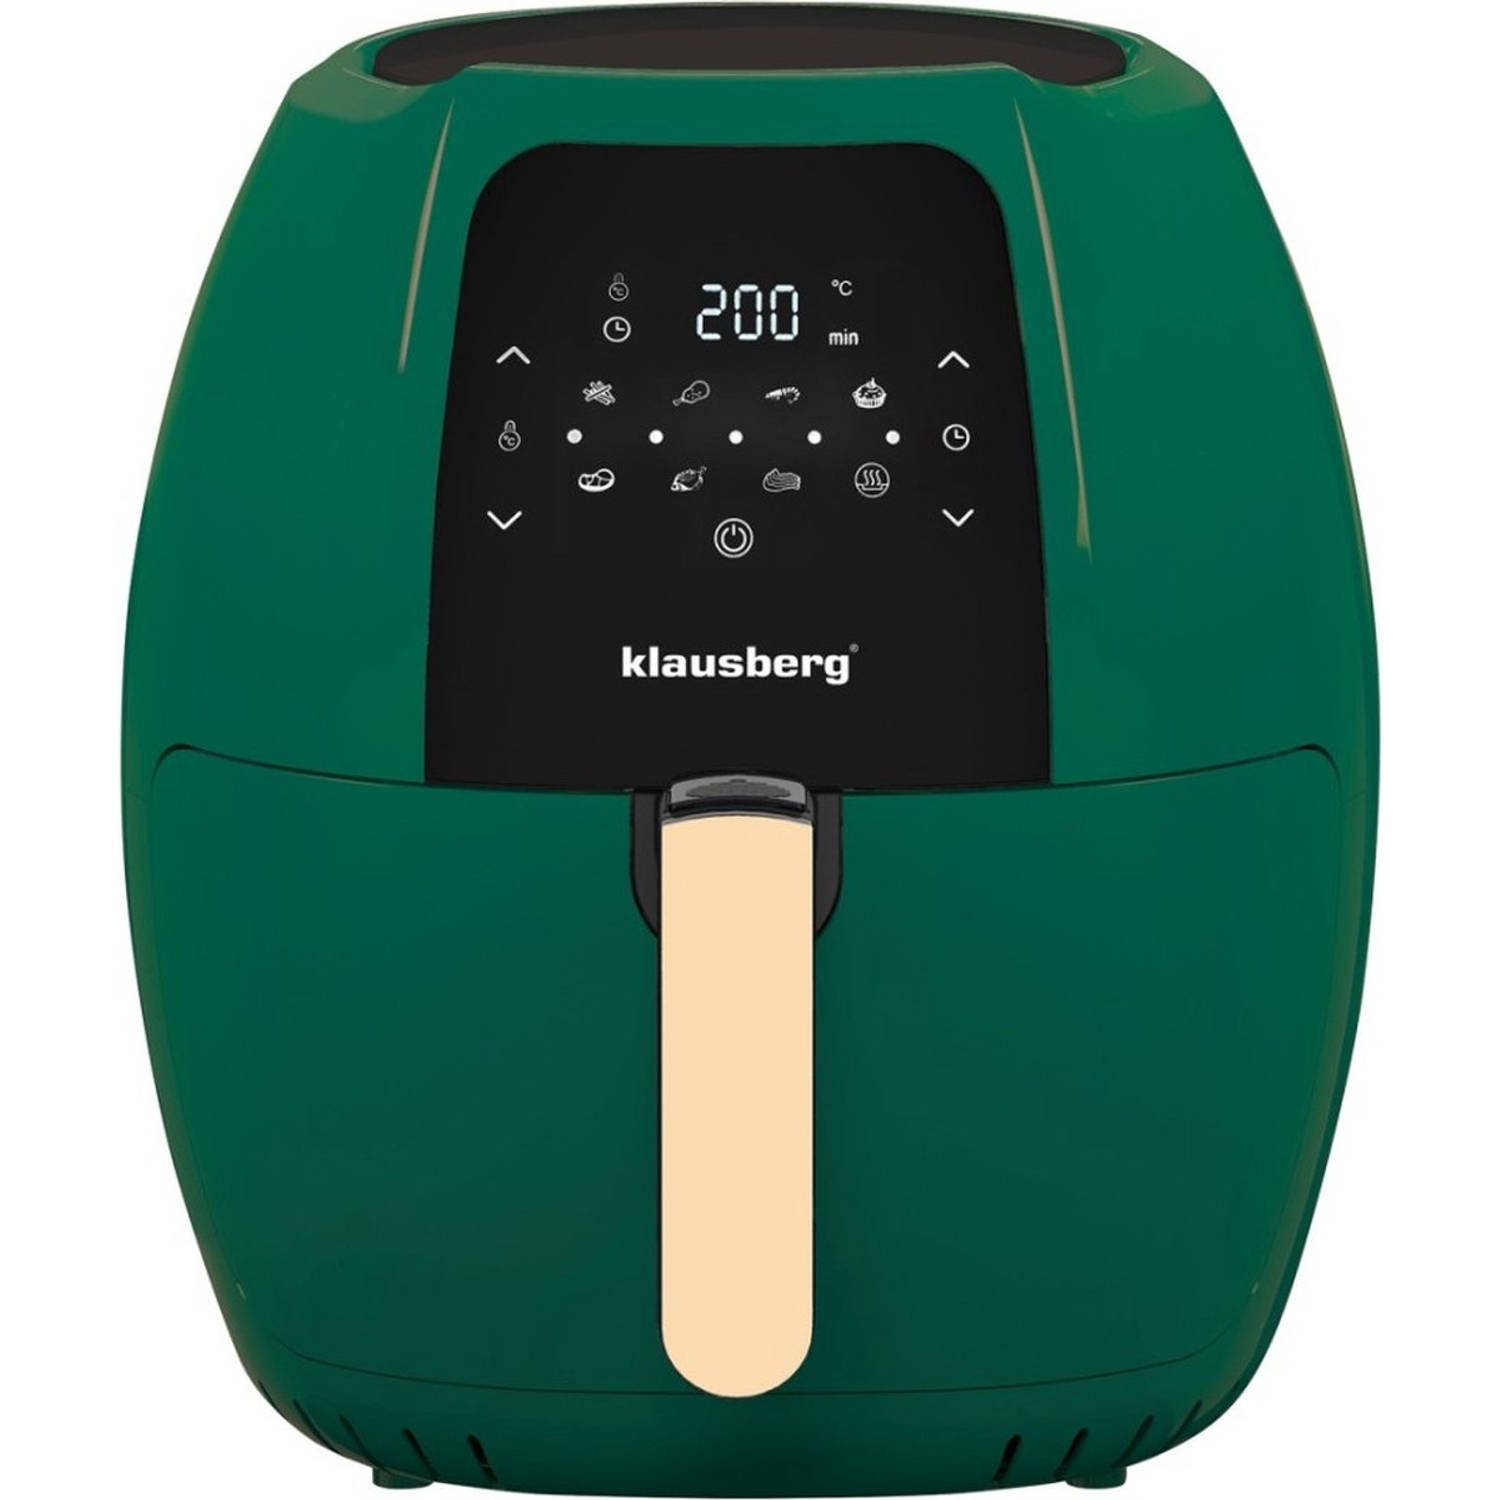 Klausberg 7596 - Hetelucht frituurpan - Groen - 7.7 liter